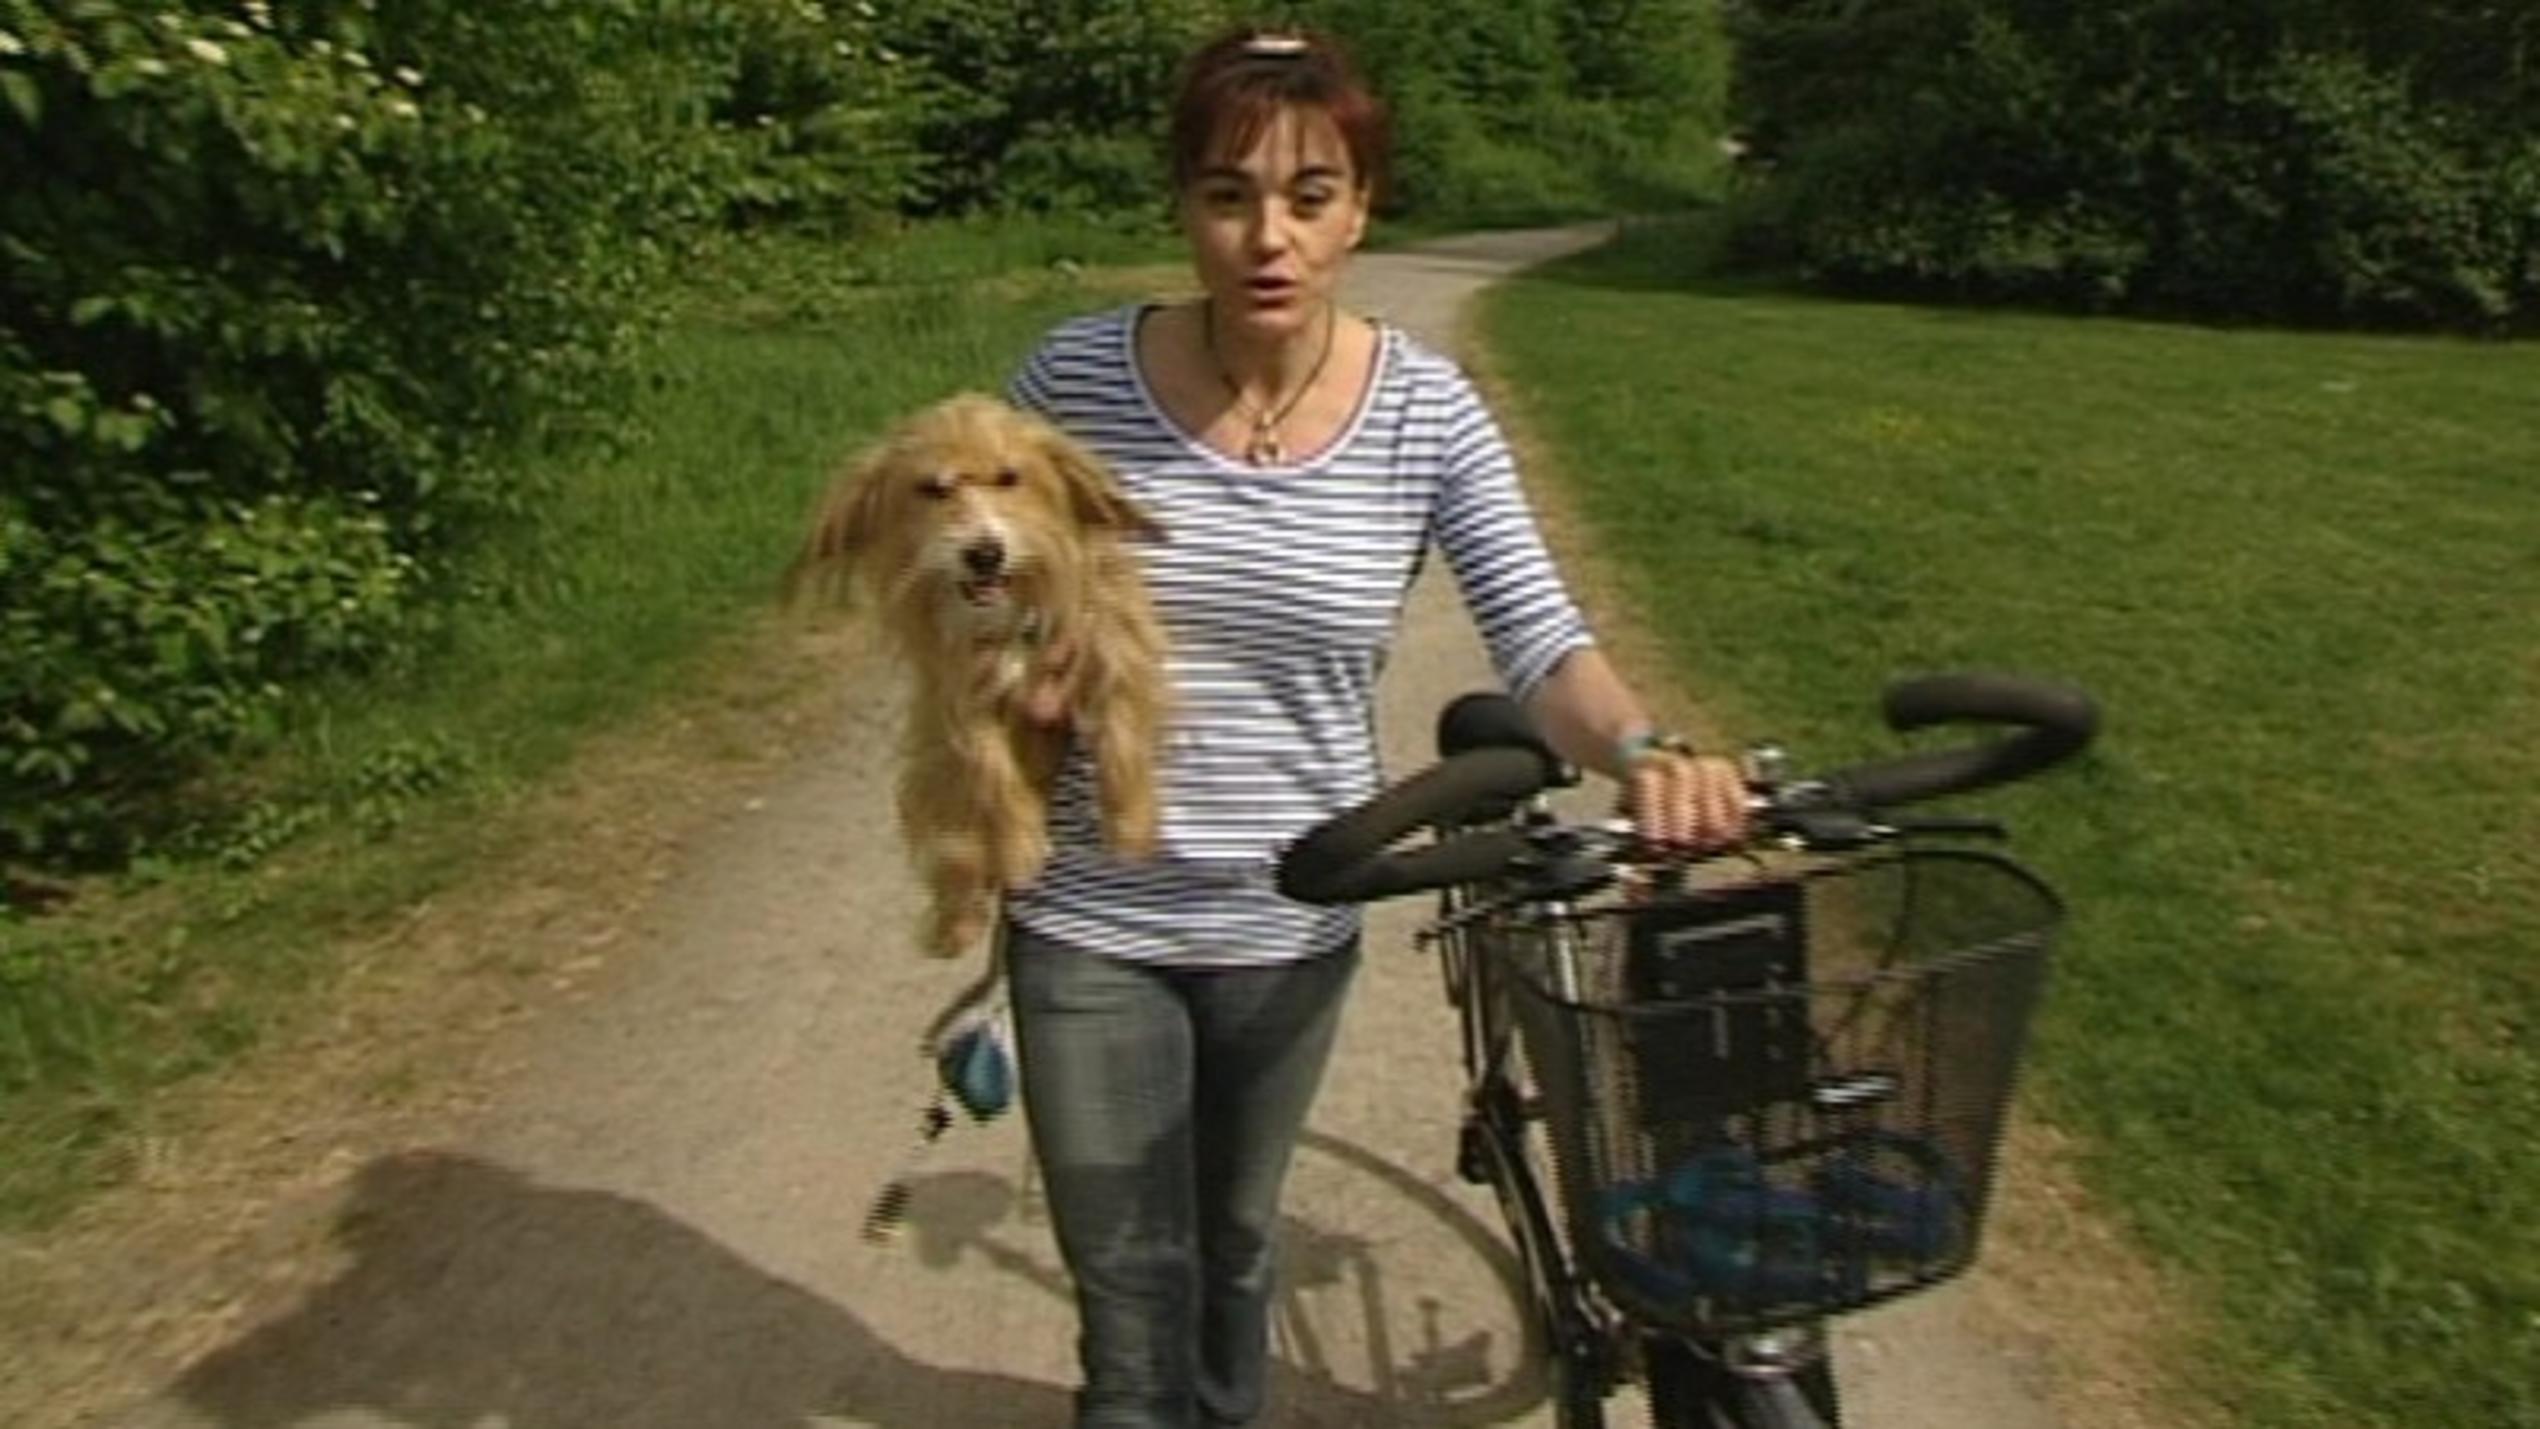 hundkatzemaus-Reporterin Diana Eichhorn mit ihrer Hündin Klein Maggie auf dem Fahrrad